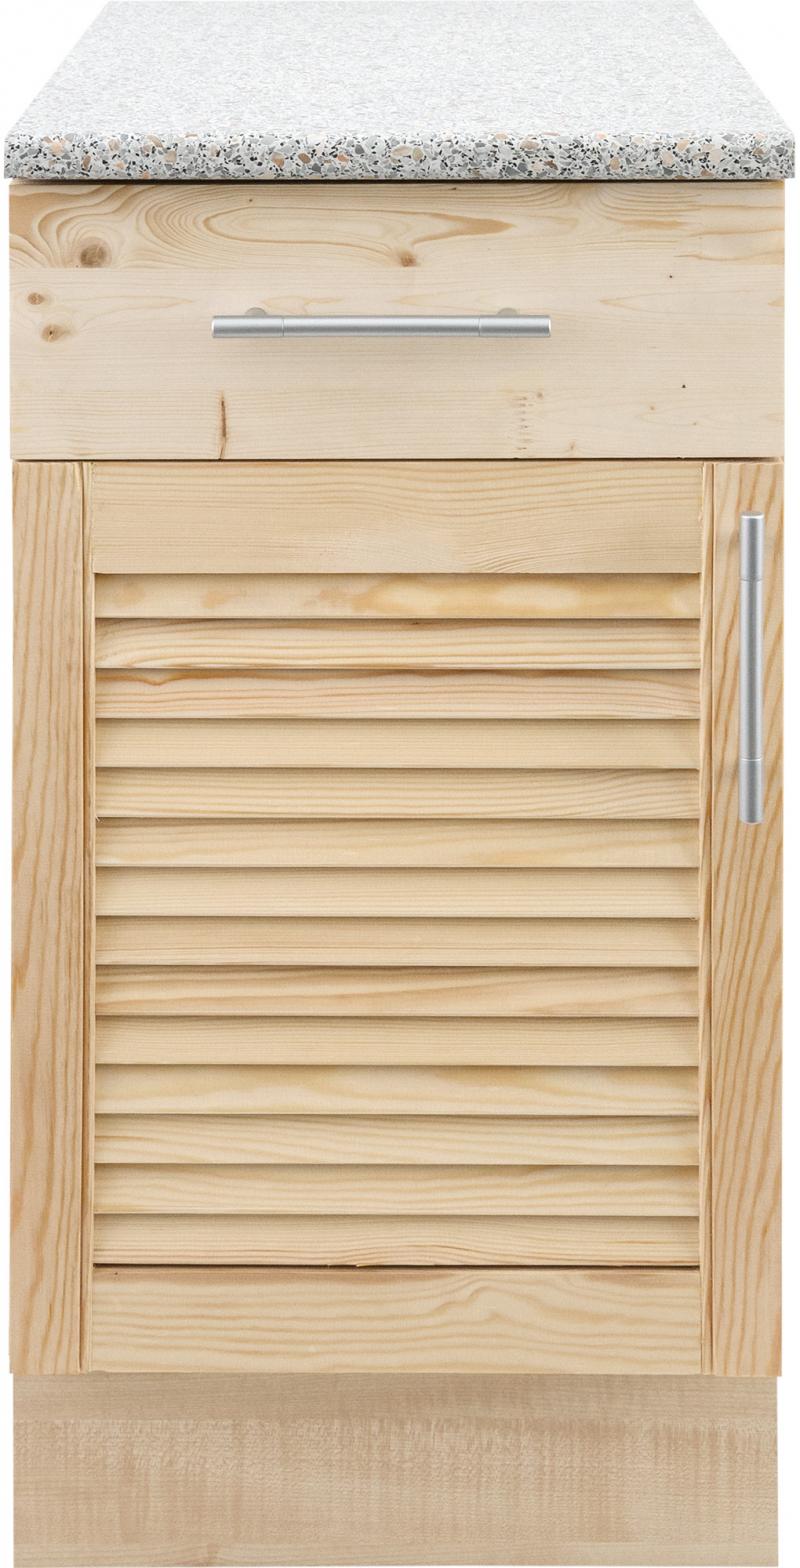 Шкаф напольный «Сосна жалюзи Мо» с фасадом и одним ящиком 85х40 см, хвоя/ЛДСП, цвет cосна